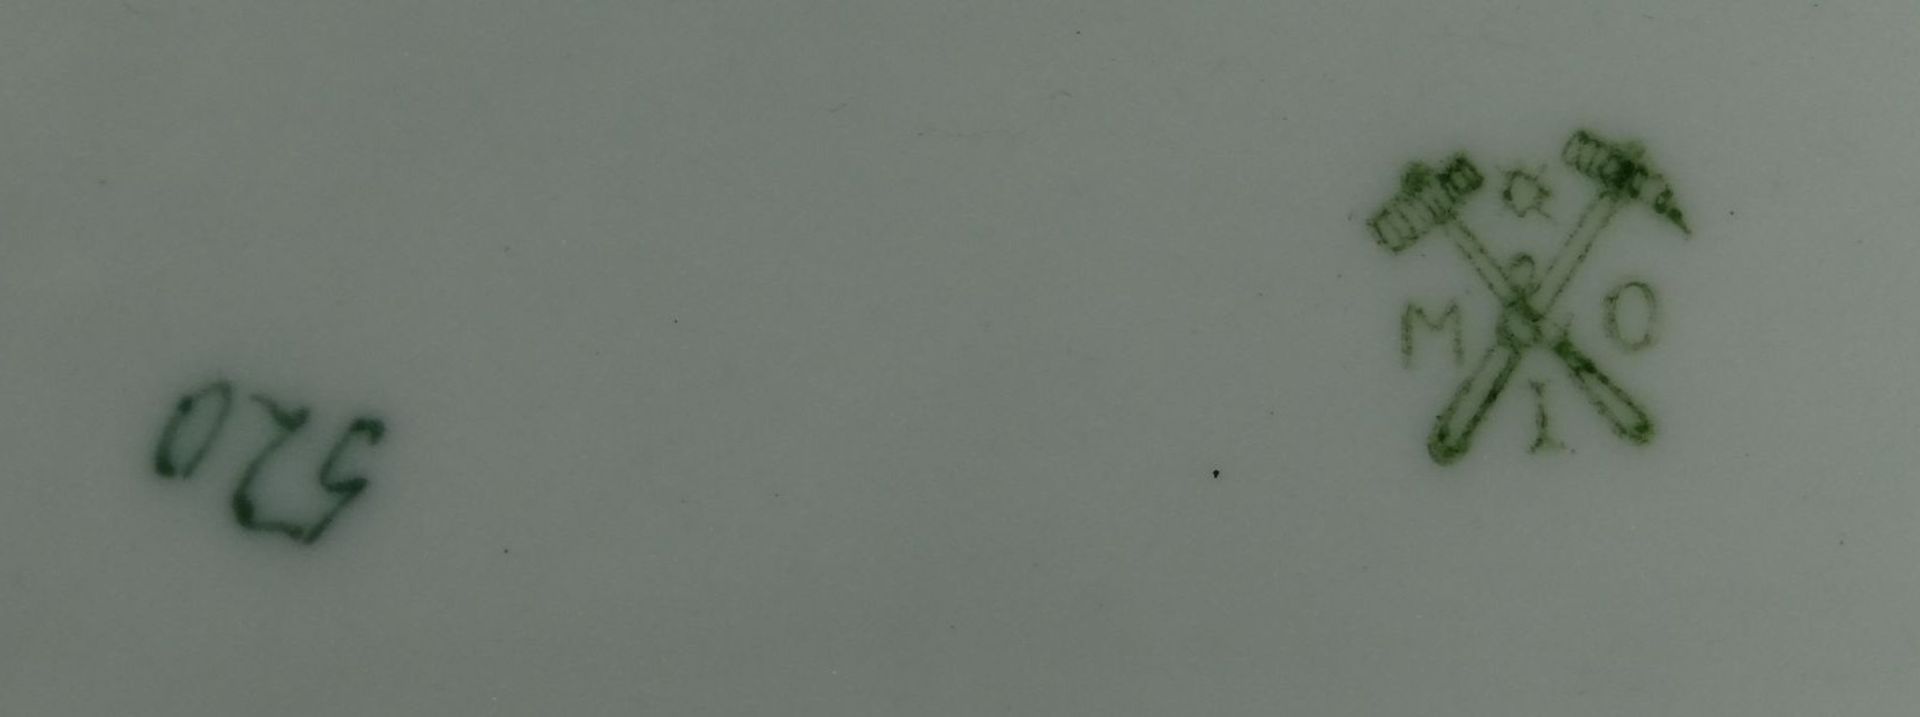 kl. Schale mit Woifdarstellung "Metzler&Orloff" dat. seitlich Union 1911, 7x14 cm- - -22.61 % - Bild 4 aus 5